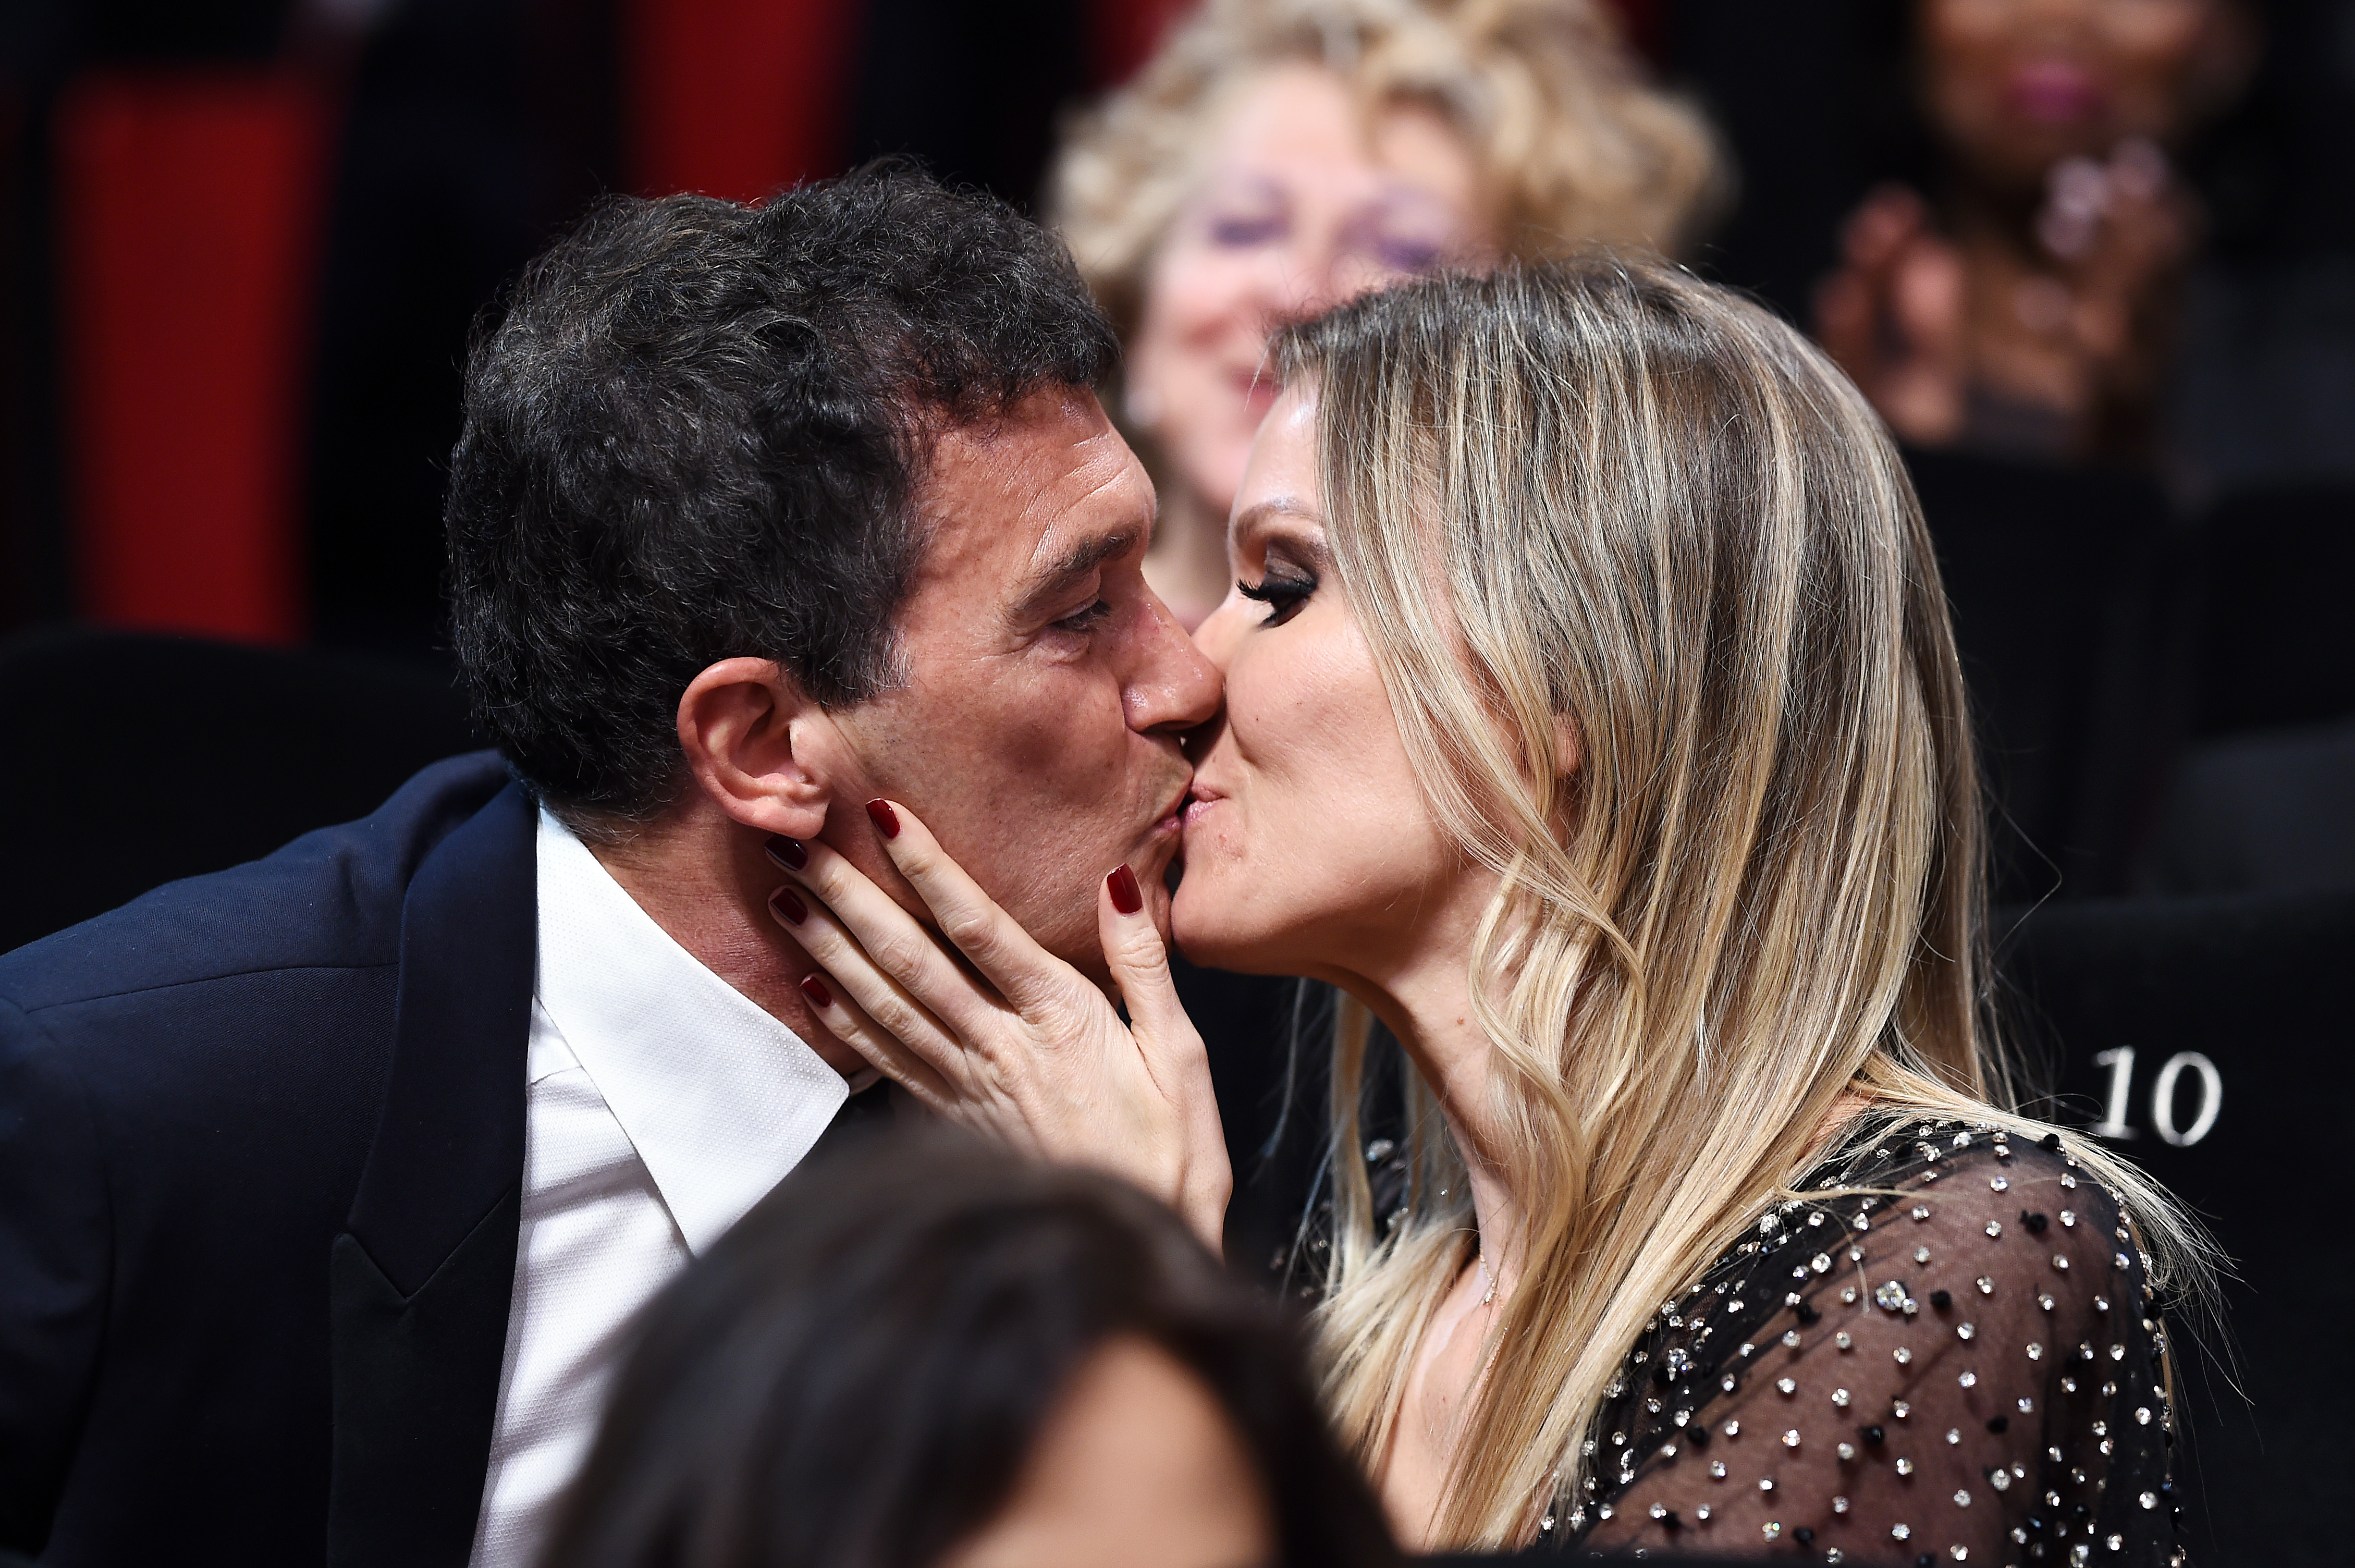 Antonio Banderas y Nicole Kimpel en la 72ª edición del Festival de Cine de Cannes, el 25 de mayo de 2019. | Foto: Getty Images